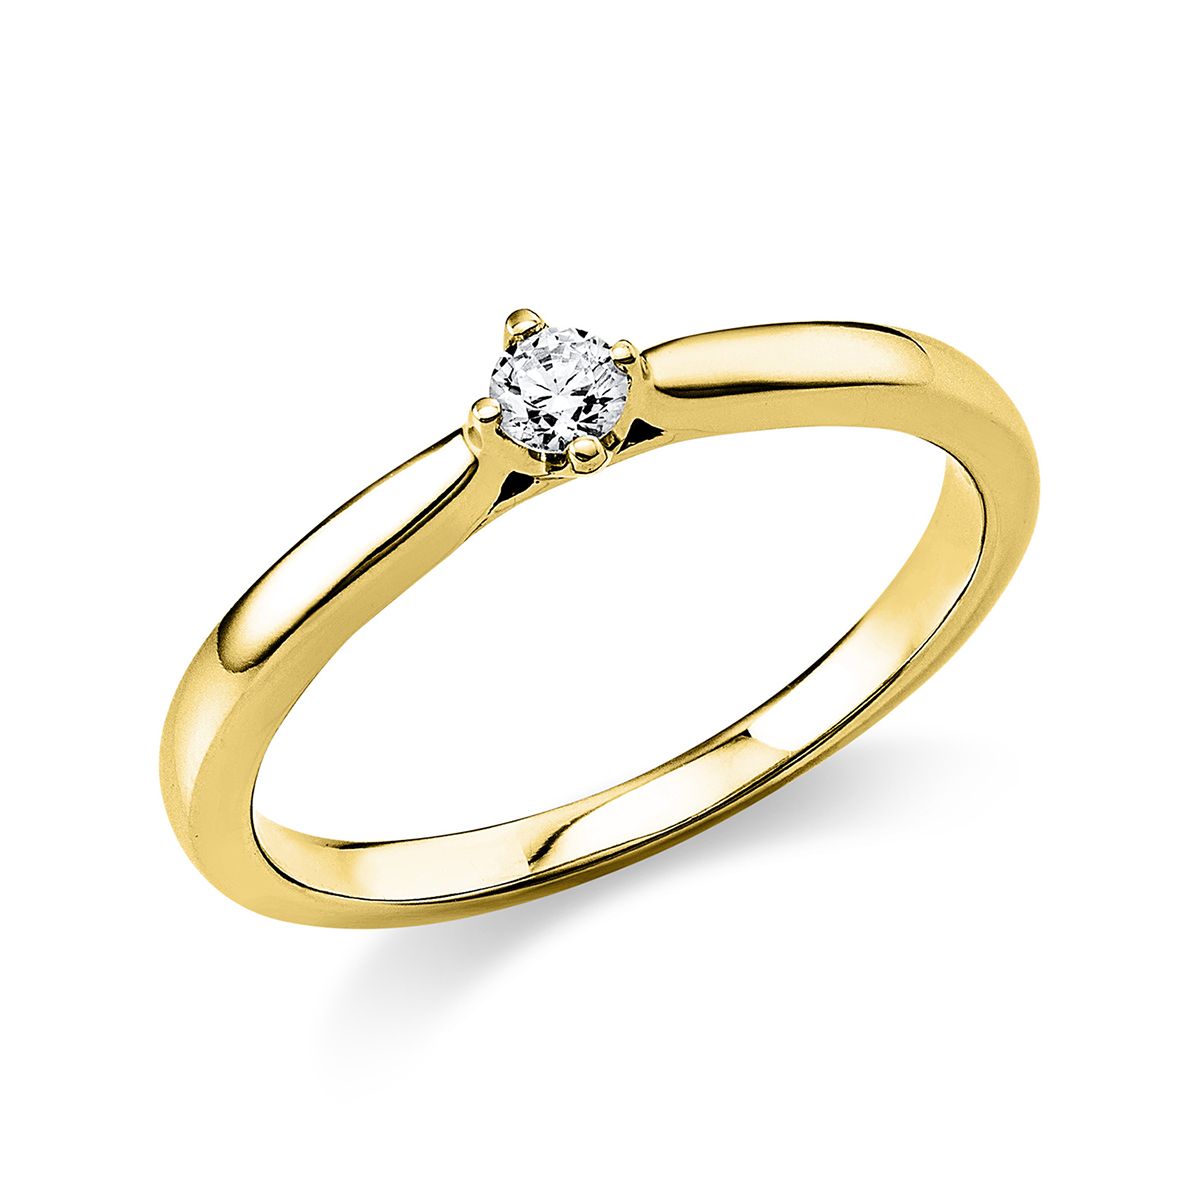 Solitär-Ring 4-Griff-Fassung 585/14K Gelbgold, Diamant 0.1 ct.